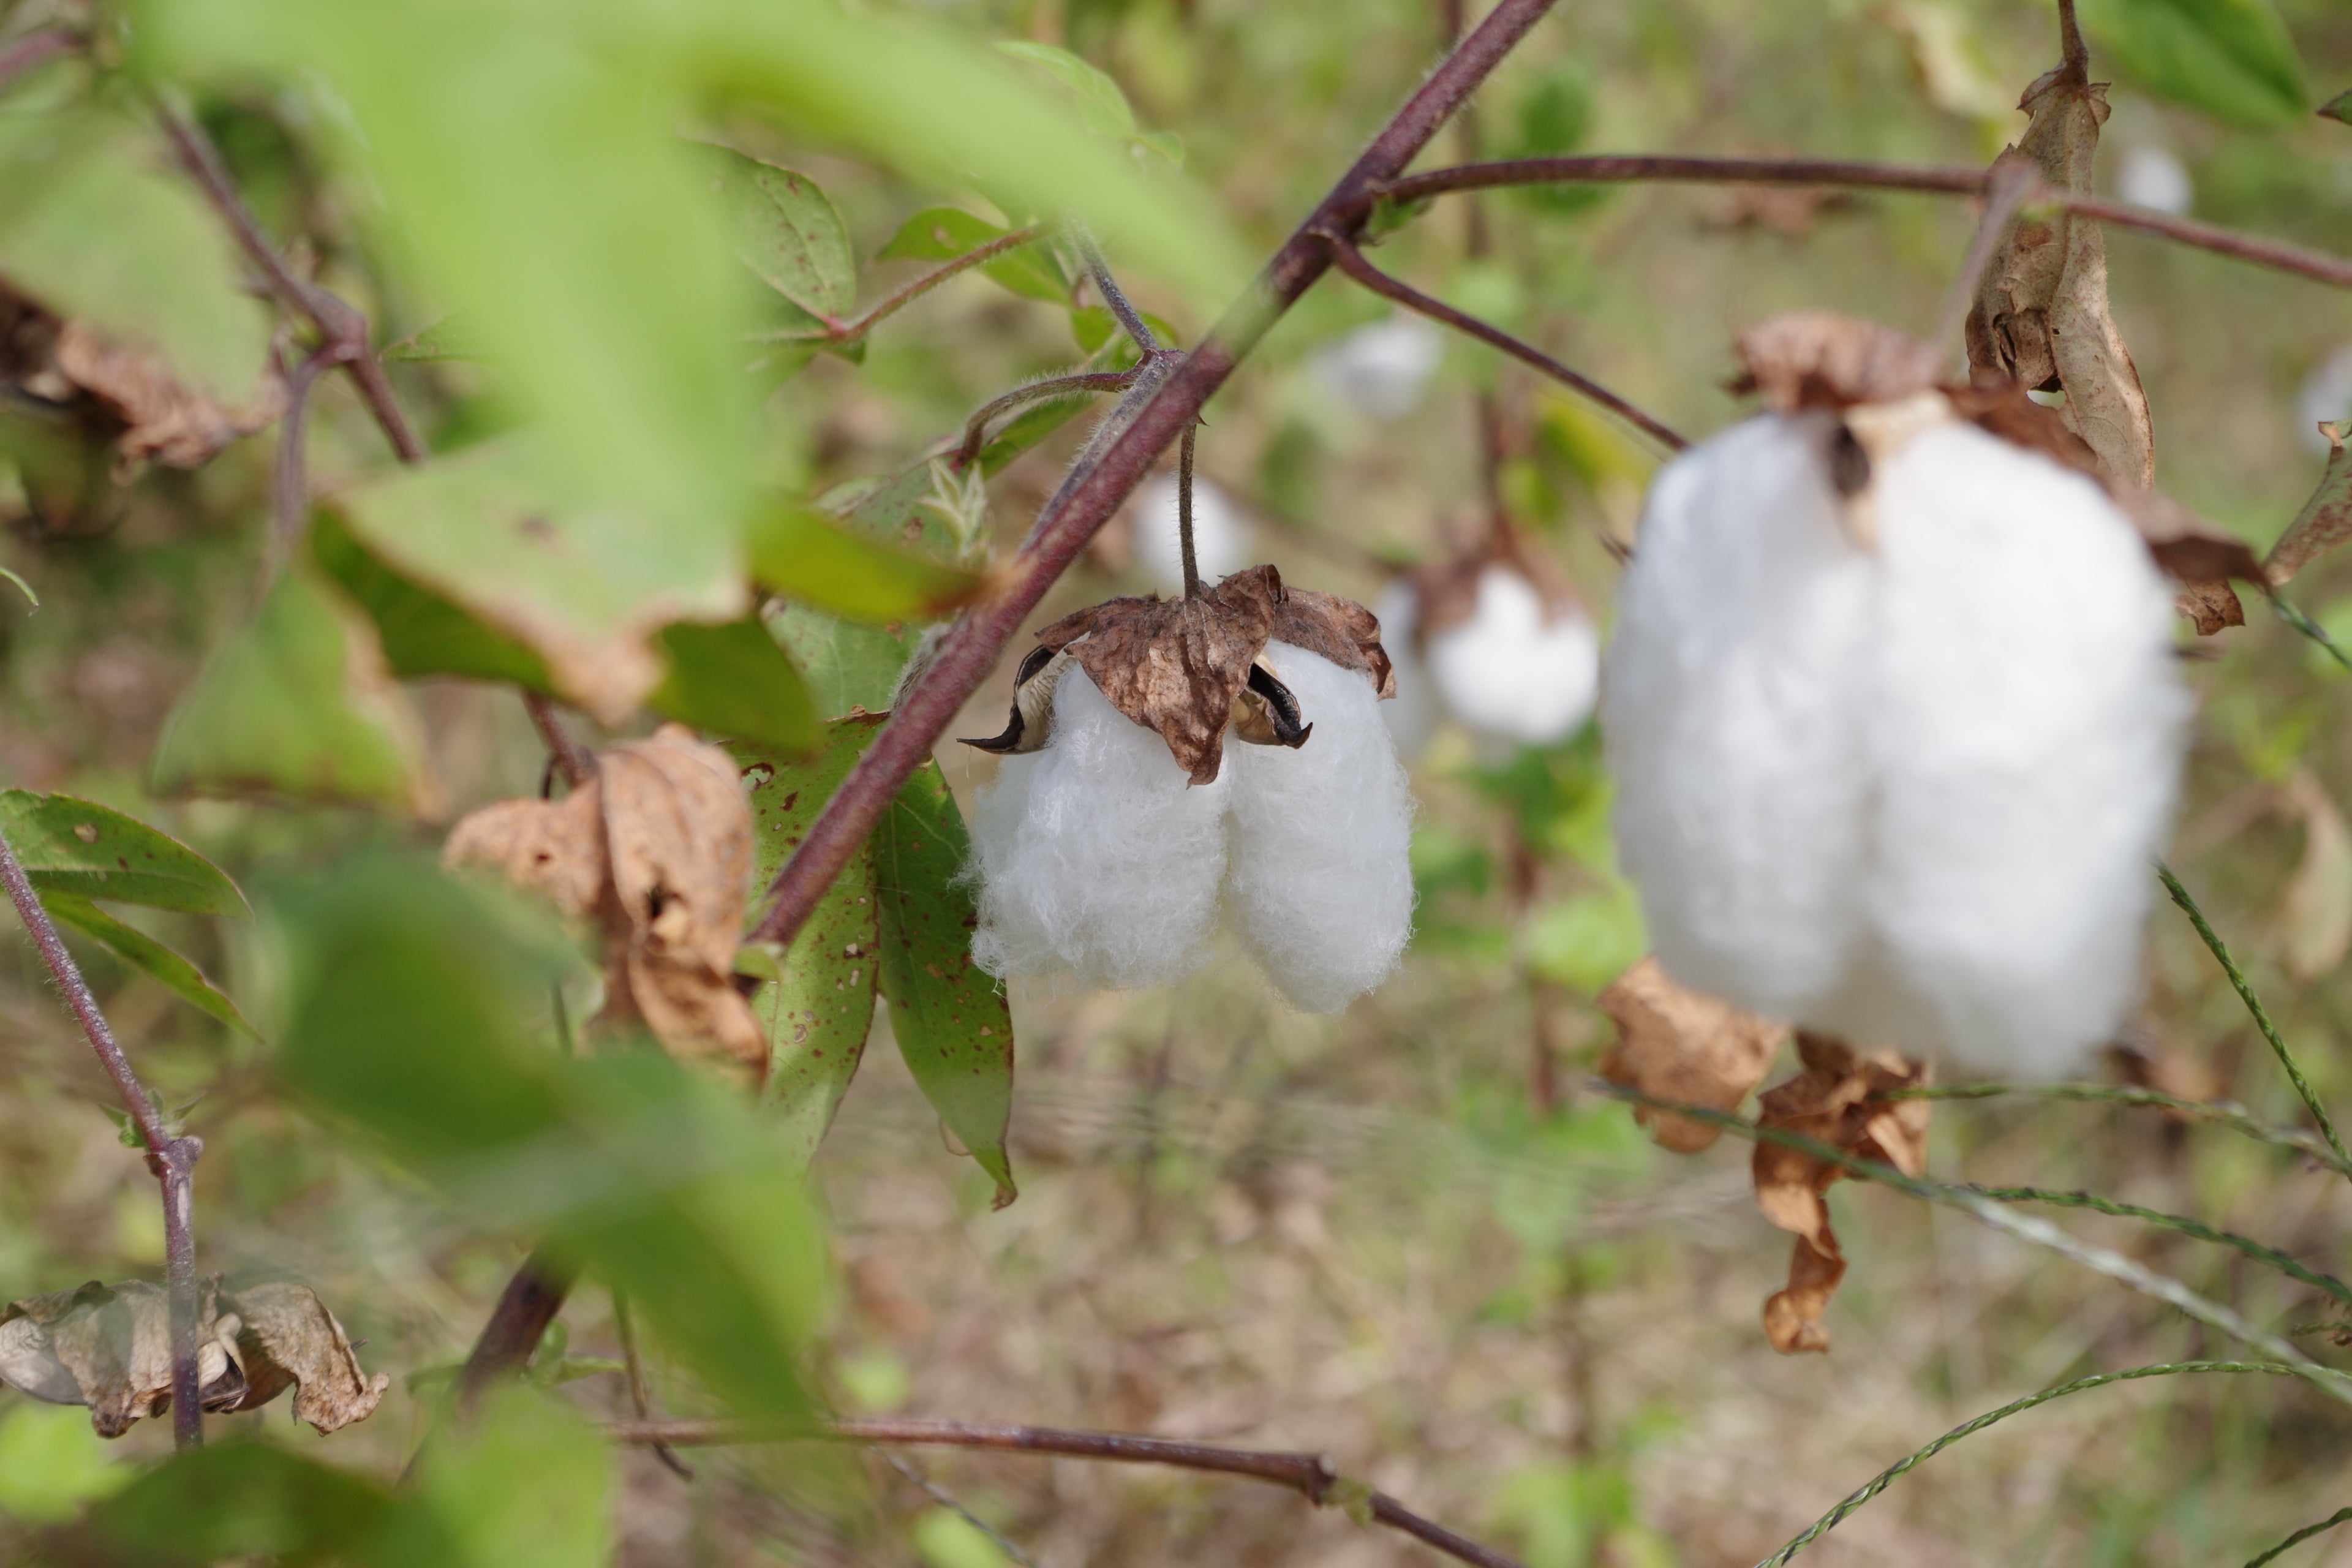 ふわふわとした触り心地、綿の優しい香り、それが和綿の特徴です。弊社では、オーガニックコットンを国内で栽培し、徹底的に無農薬で育てています。私たちは環境にやさしい栽培方法を採用し、土壌や水源を守りながら、豊かな自然の力だけで和綿を作り上げています。身につける方々に安心と快適さを提供するために、品質にこだわり繊細な糸を丹念に紡ぎ上げています。ぜひ、和綿の魅力をご体感ください。わたから わたからつむぐ マインド松井 日本の綿 わた 和綿 綿 和綿とは コットン コットンとは コットン１００％ オーガニックコットン 日用品 商品 無農薬 わめん 育て方 種類 洋綿 綿花 エコ エシカル エシカル商品 サスティナブル 糸紡ぎ 収穫 特徴 綿摘み 種 販売 豊か 暮らし 豊かな暮らし 生活 ガラ紡 コットン 生地 おすすめ 収穫 国産和綿 国産の綿 国産 生産地 自社畑 岐阜　熊本　綿　わた コットン オーガニックコットン 綿１００％　コットン１００％　オーガニックコットン１００％ 綿 わた コットン オーガニックコットン 綿１００％　コットン１００％　オーガニックコットン１００％